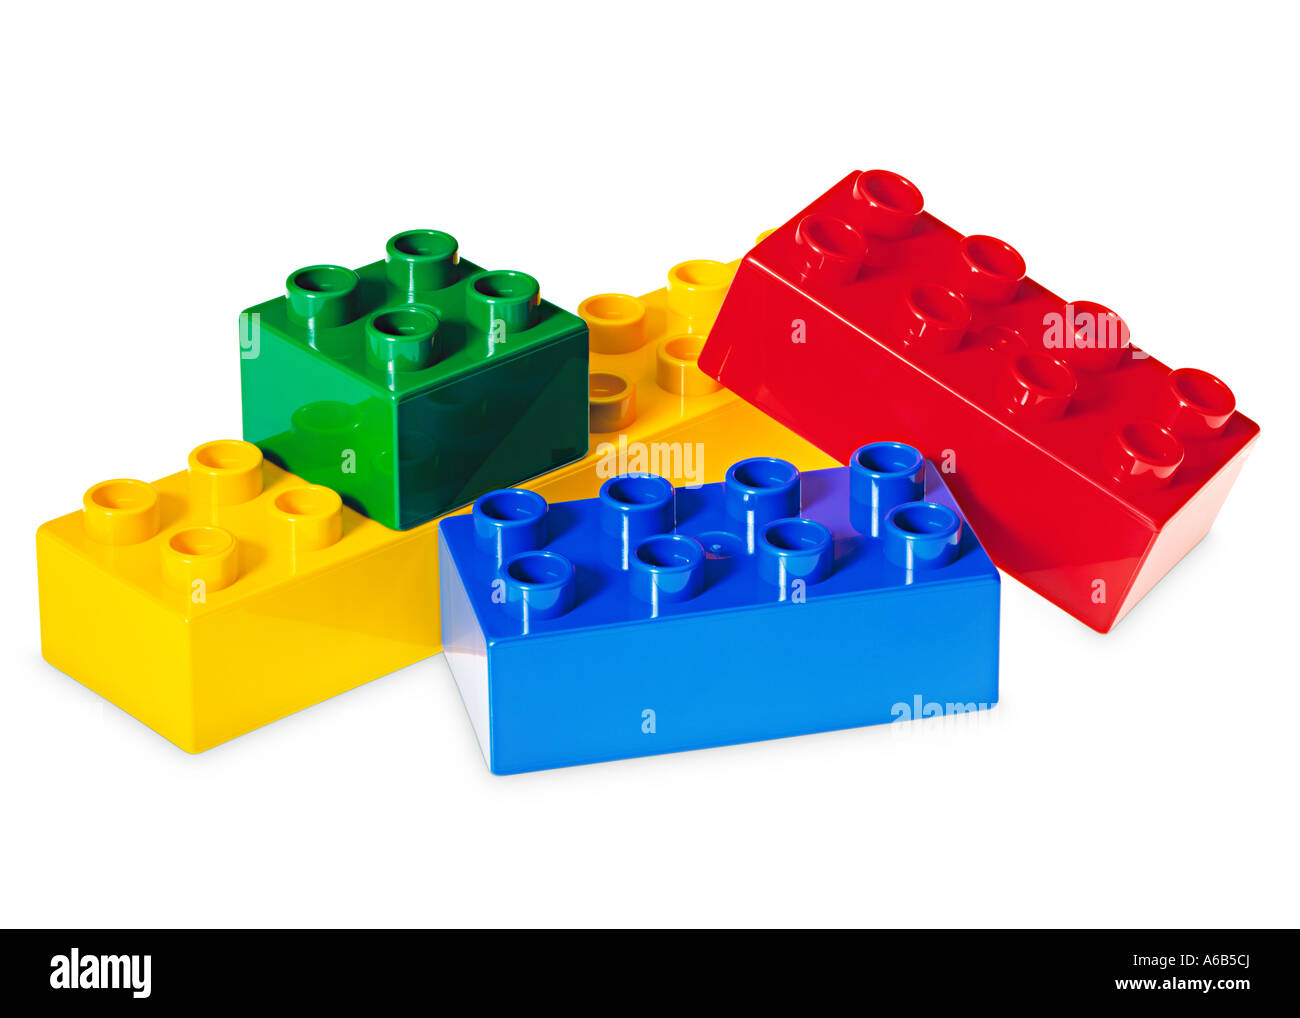 Lego i mattoni colorati simbolo della costruzione di infanzia creatività immaginazione variazione varietà Foto Stock